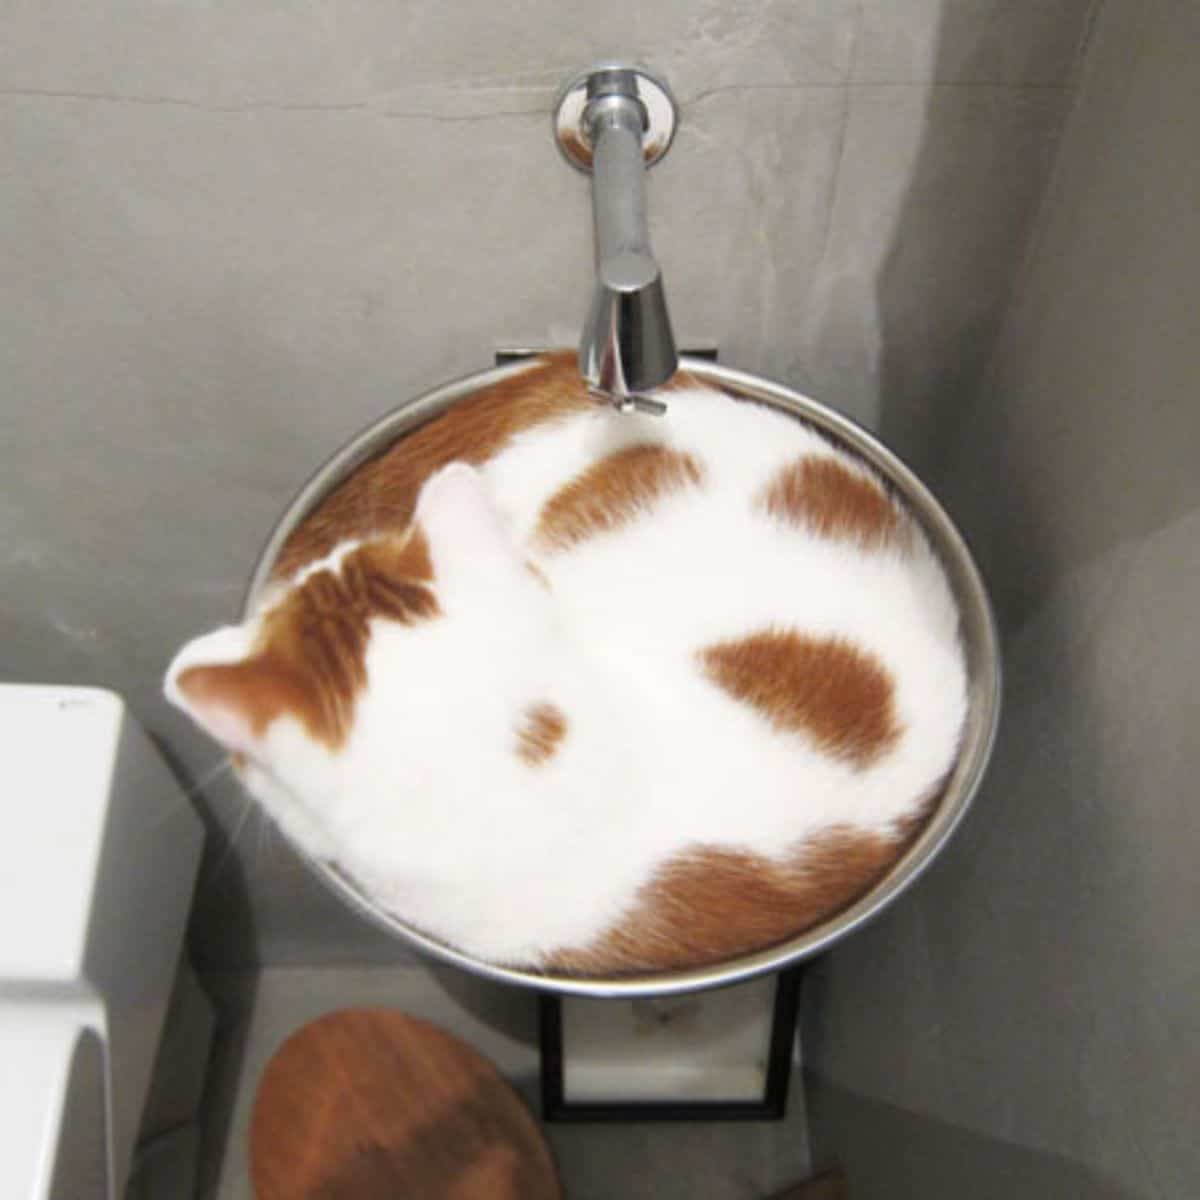 cat in a sink